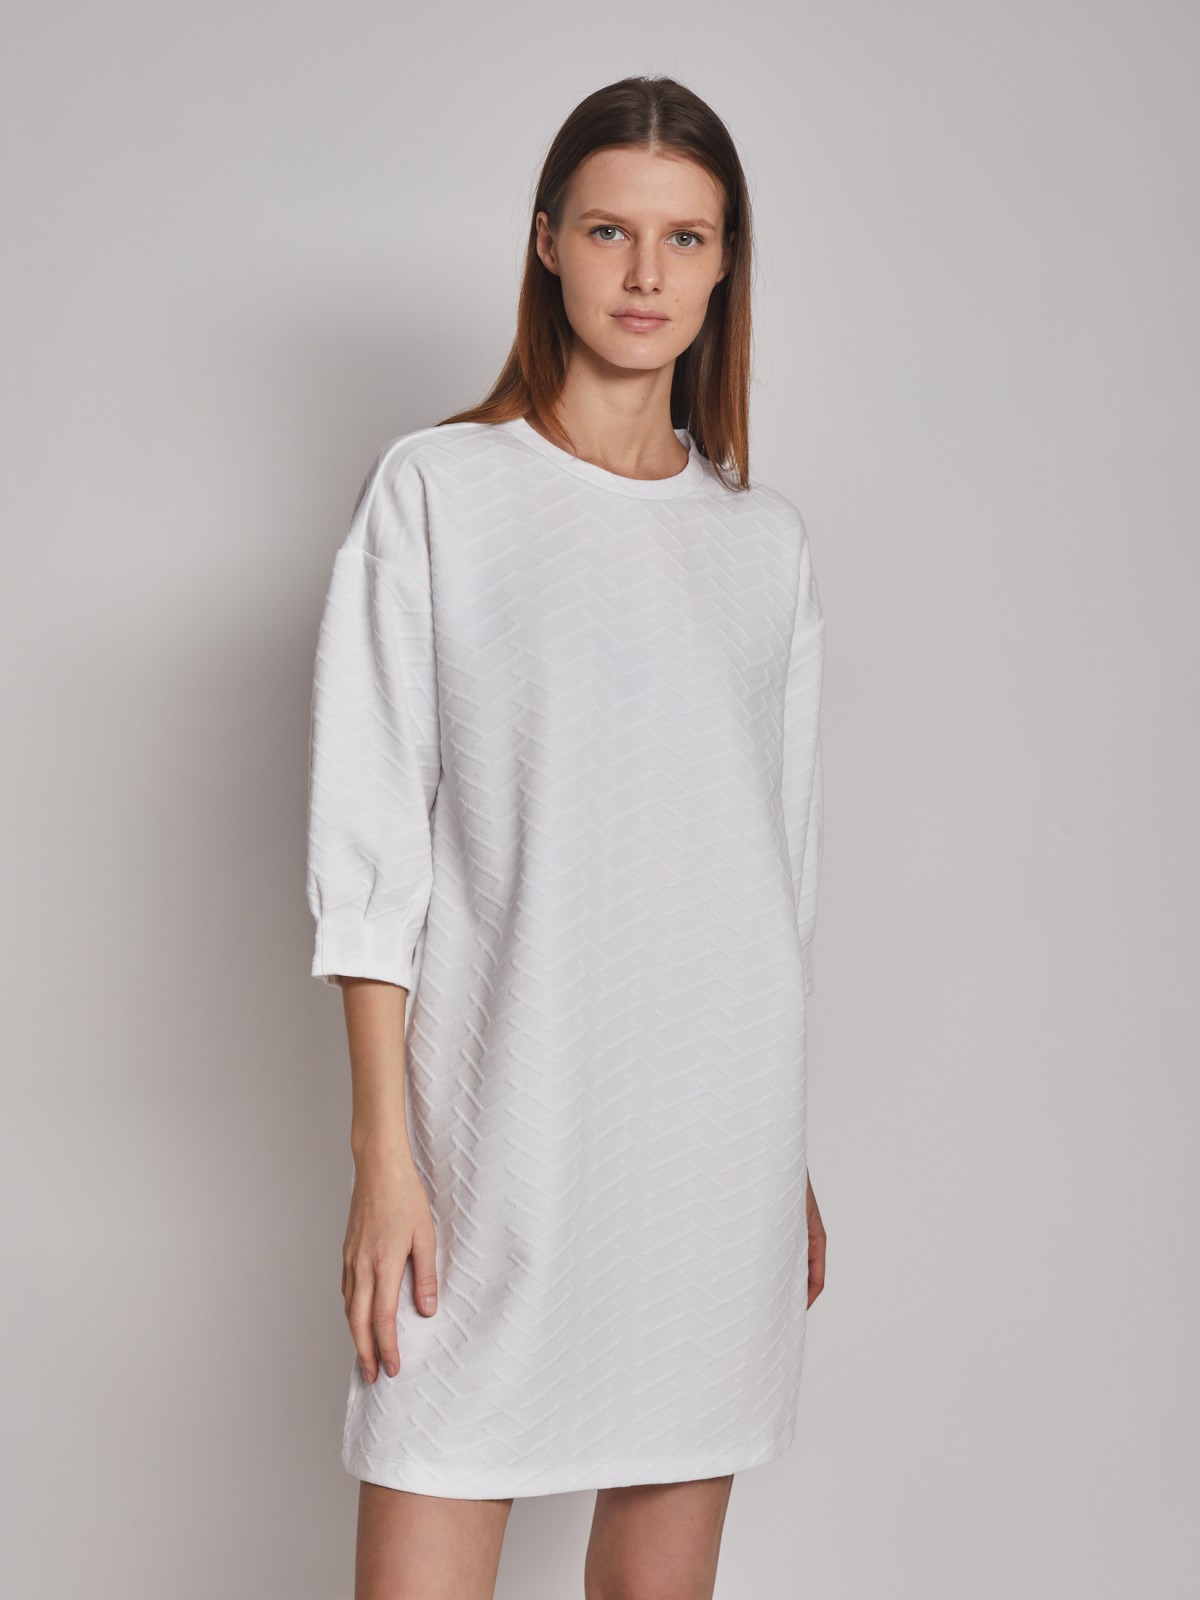 Платье кроеное zolla 02312819F083, цвет белый, размер XS - фото 5